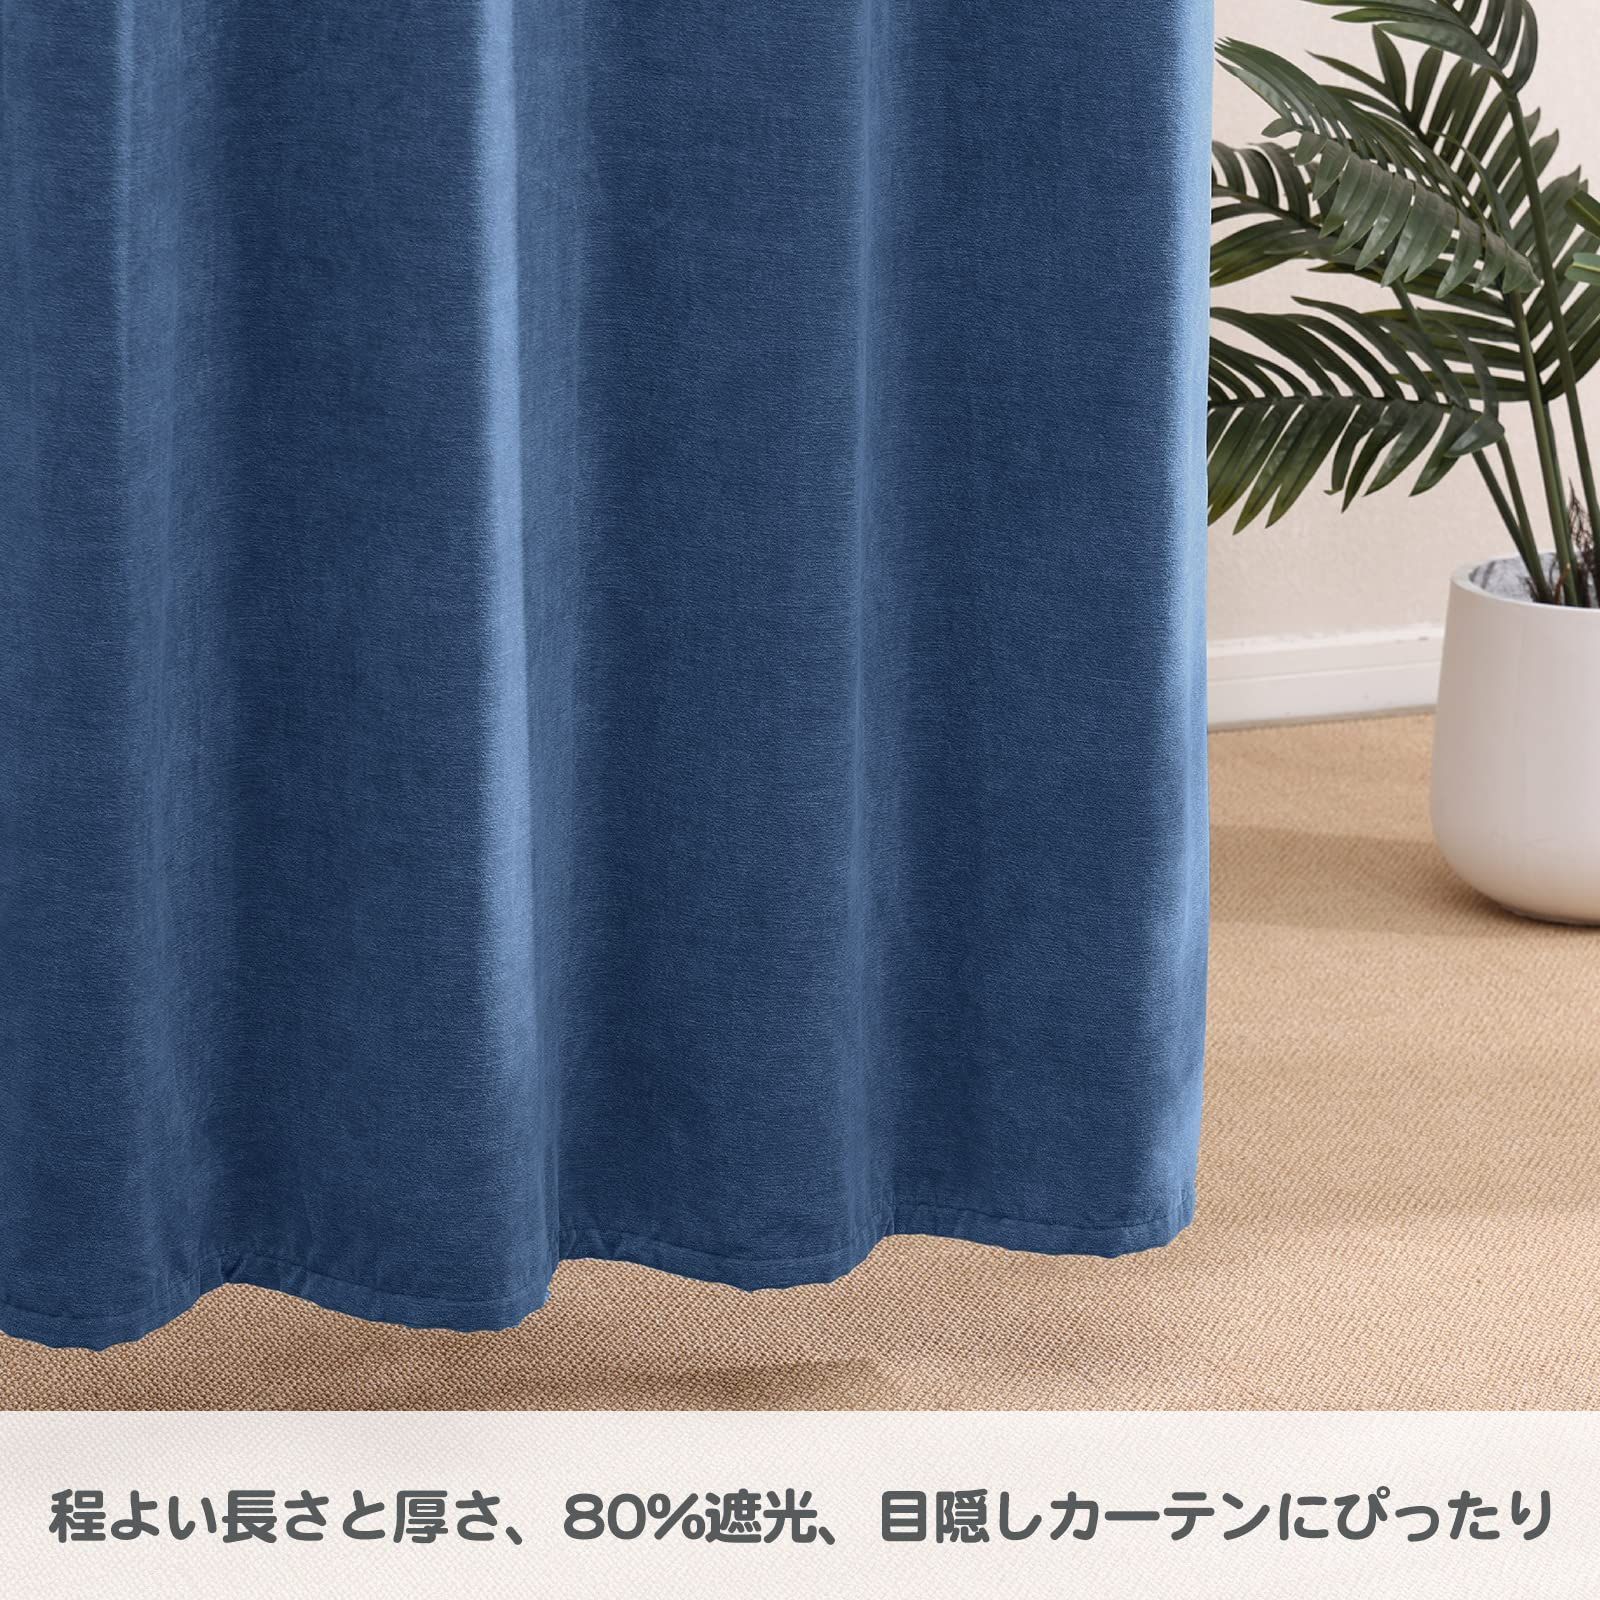 【色: アイボリー】HAVARGO 間仕切りカーテン 断熱防寒 暖簾 のれん 1